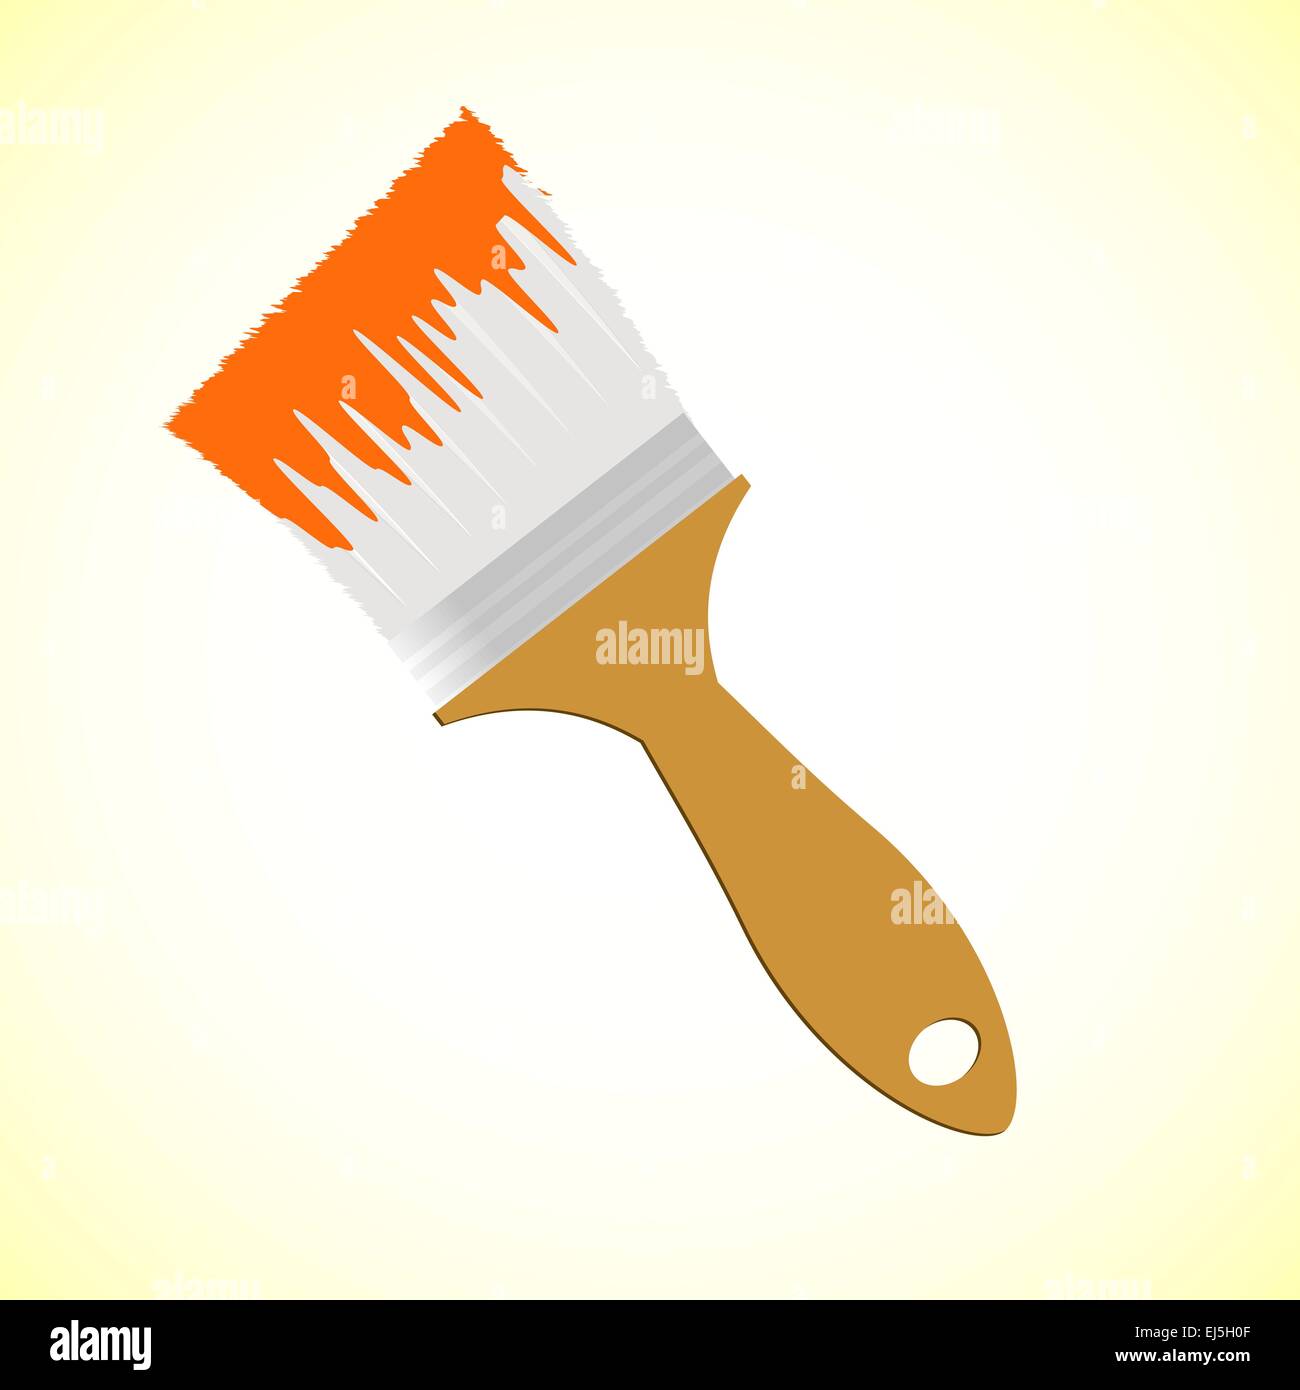 El cepillo de la pintura naranja sobre fondo amarillo suave, ilustración vectorial Ilustración del Vector